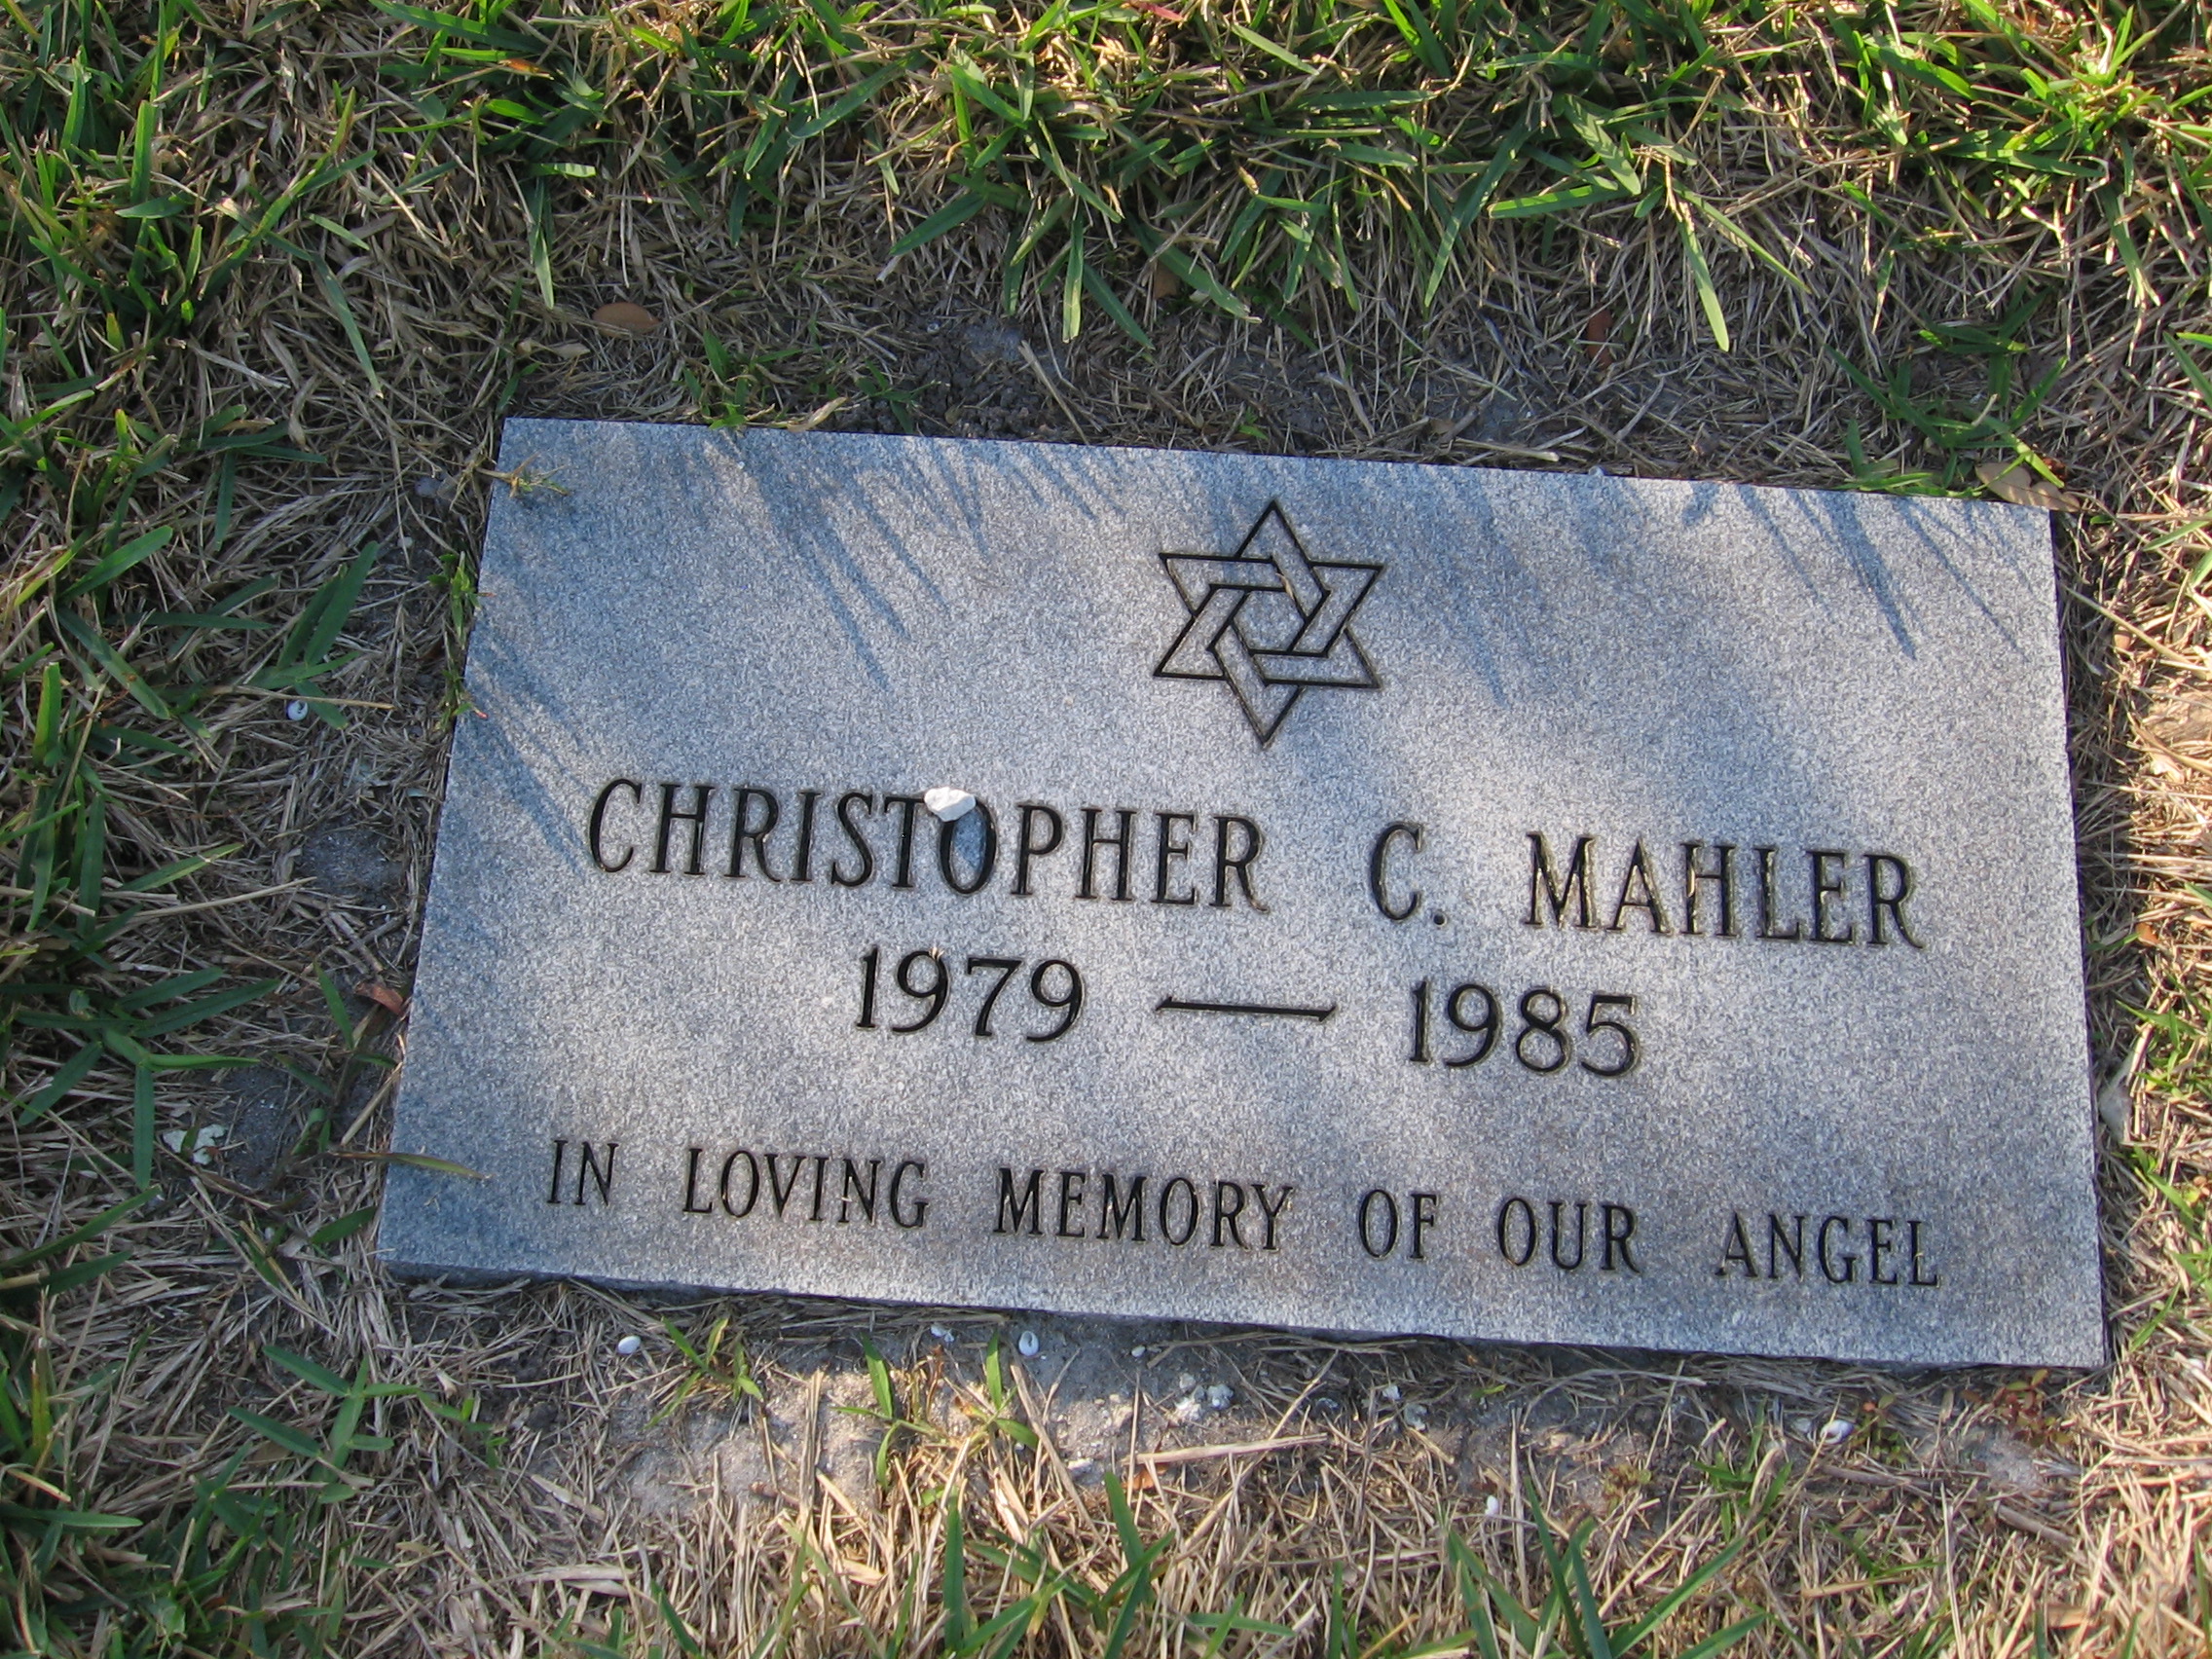 Christopher C Mahler